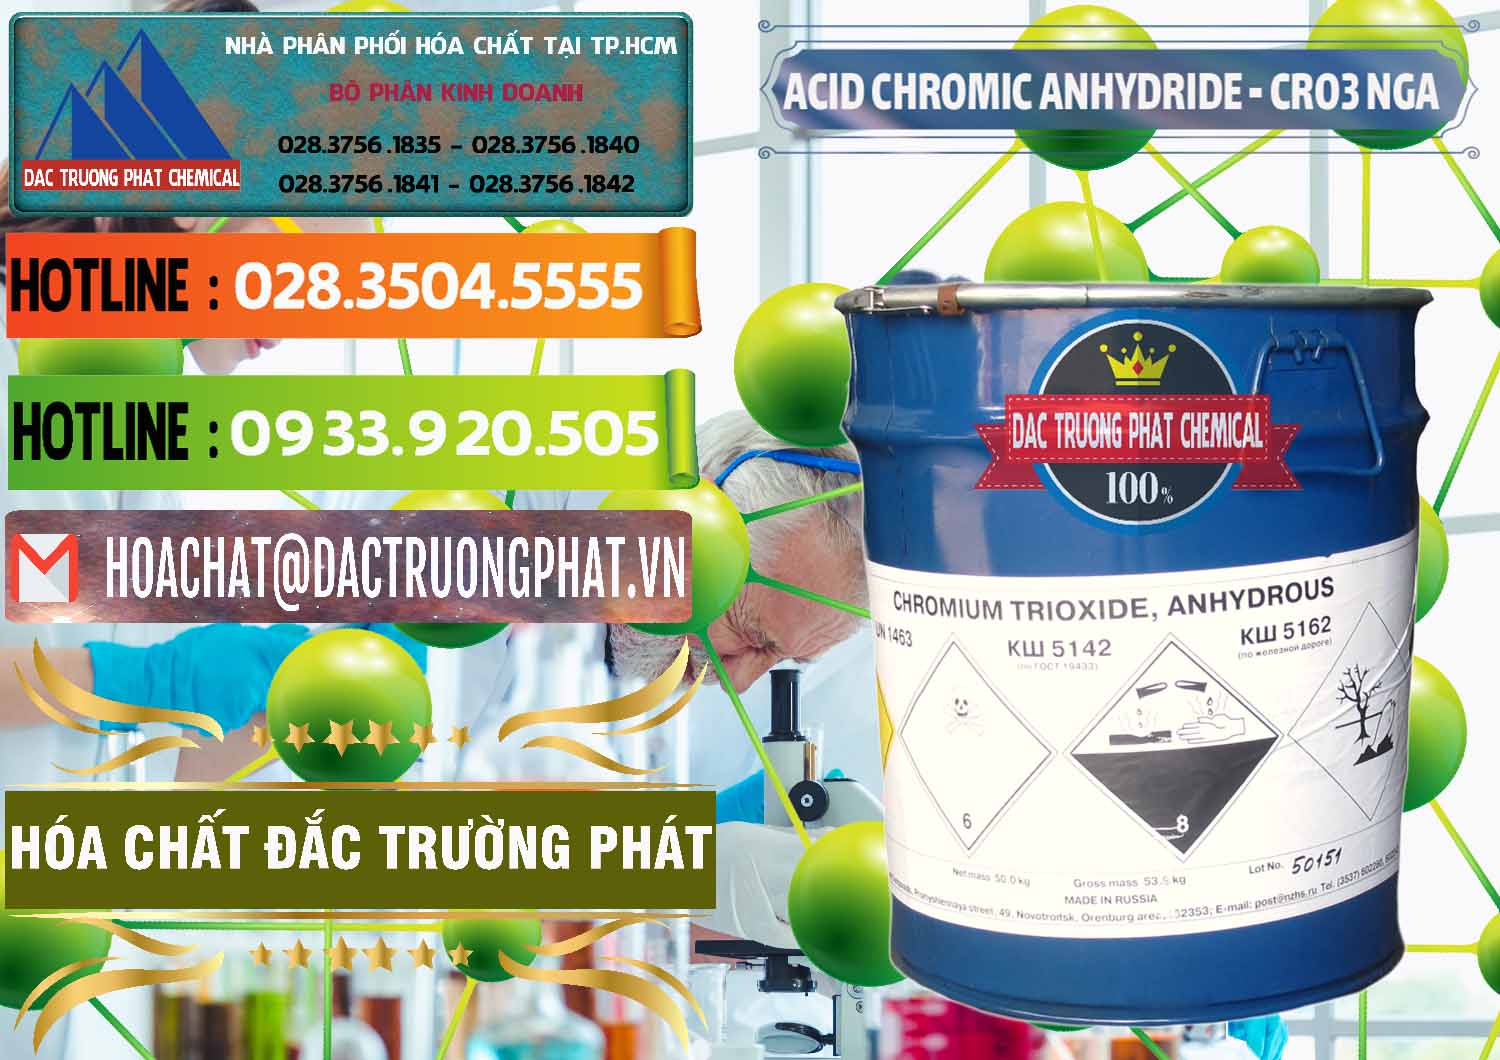 Cty chuyên cung ứng - bán Acid Chromic Anhydride - Cromic CRO3 Nga Russia - 0006 - Công ty bán và phân phối hóa chất tại TP.HCM - cungcaphoachat.com.vn